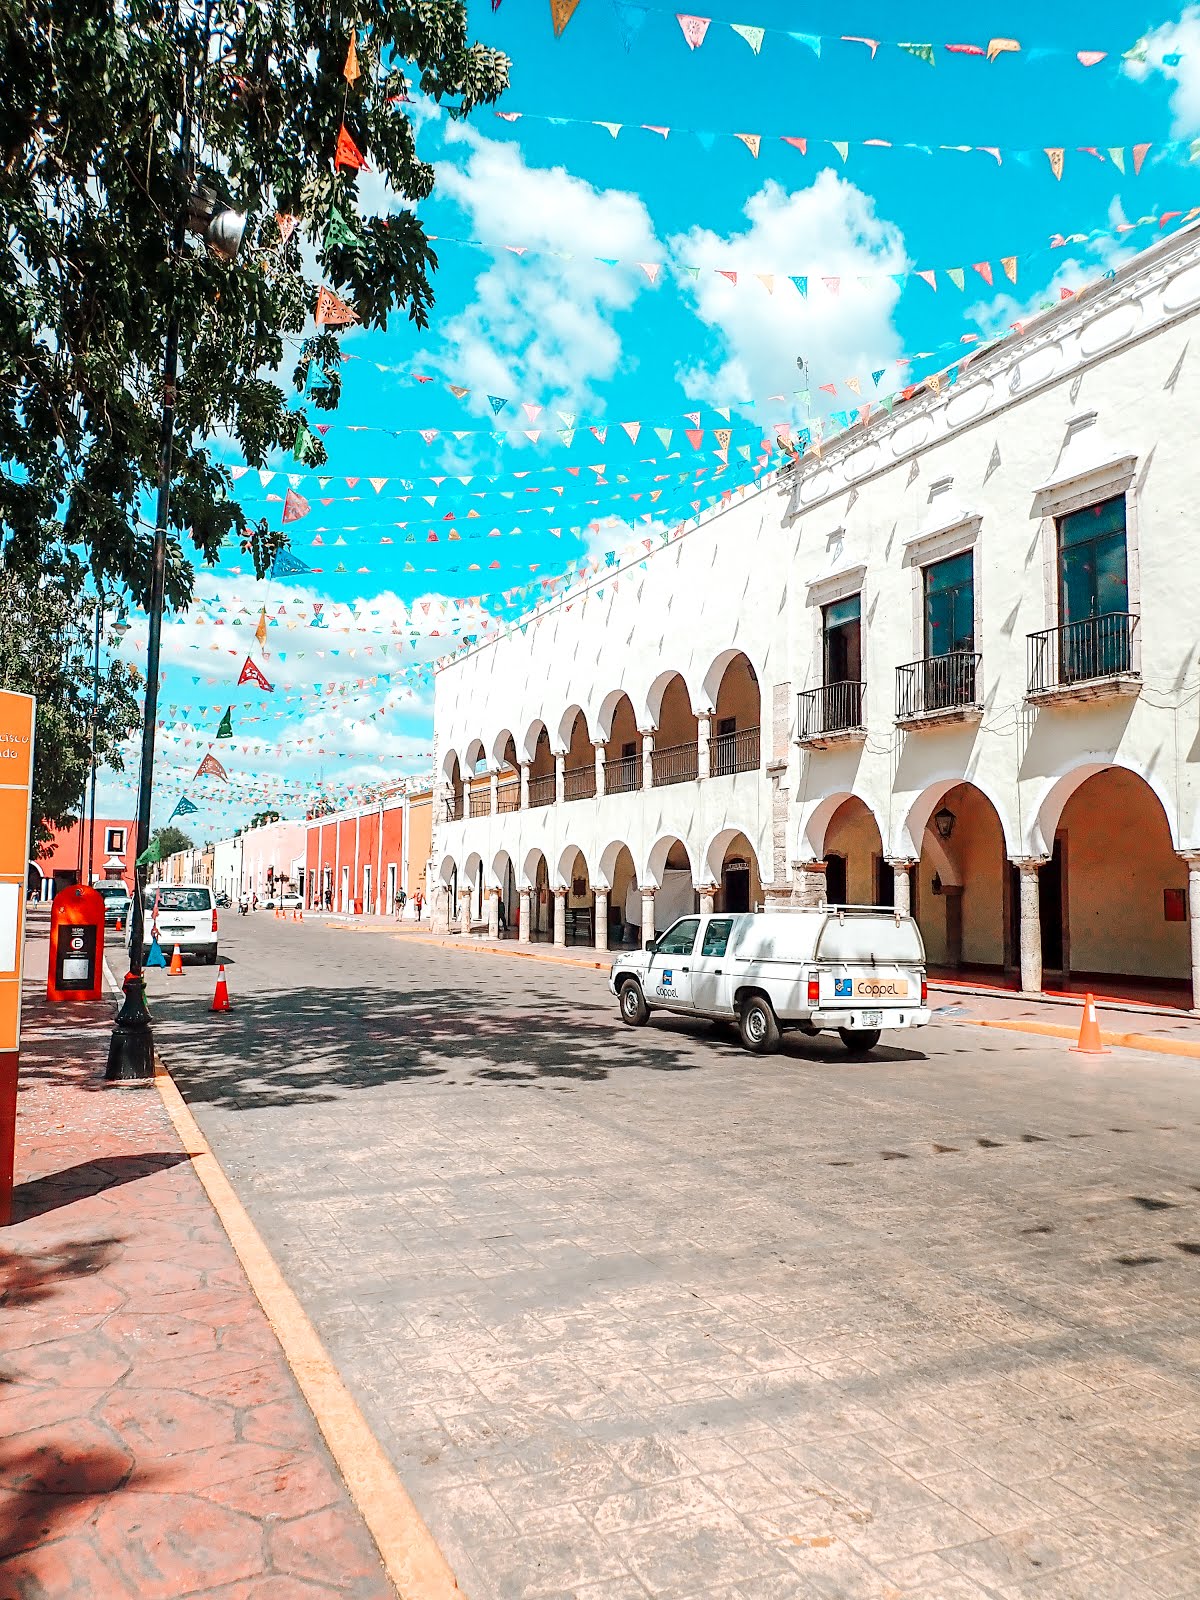 rue de la ville de valladolid au mexique, une voiture blanche roule sur la route d'autres à gauche sont garées on aperçoit les façades colorées et l'architecture typique de valladolid et des guirlandes de papiers colorés accrochés en l'air